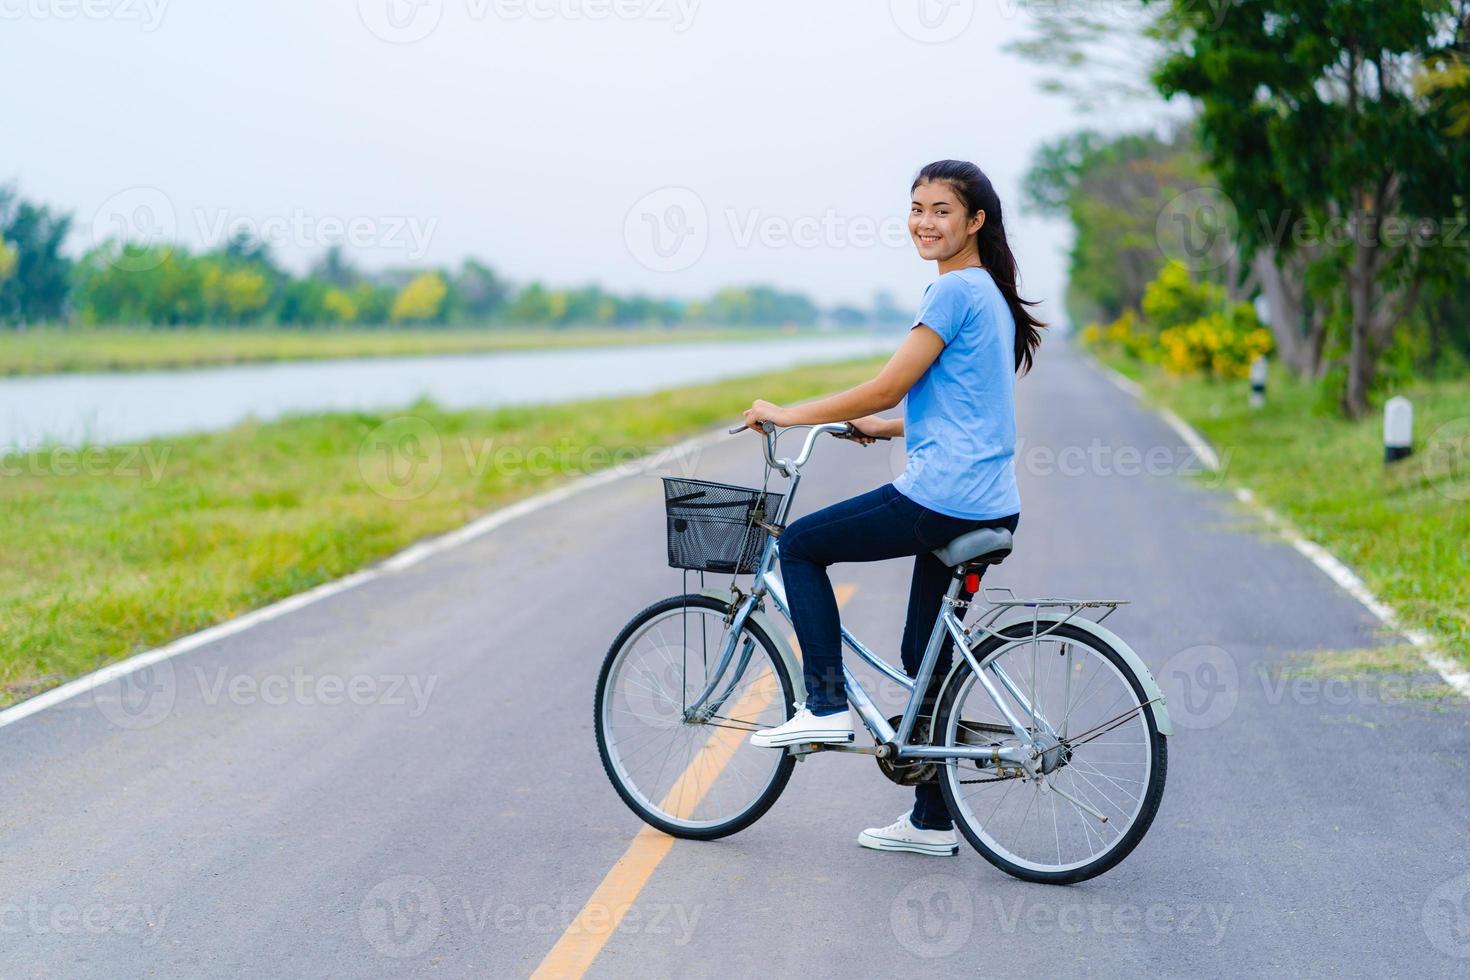 menina com bicicleta, mulher andando de bicicleta na estrada em um parque foto